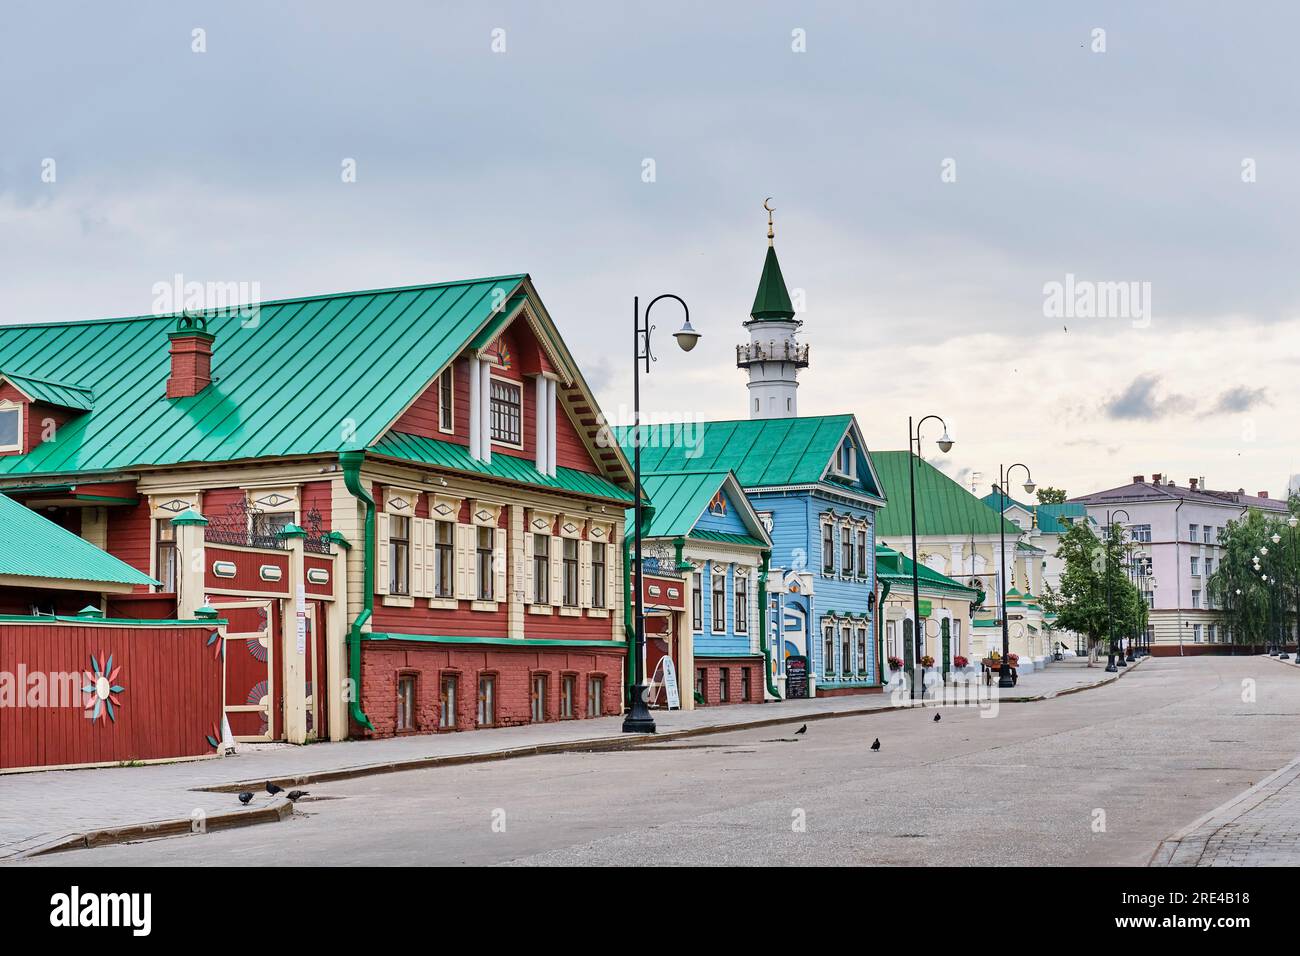 Ancienne colonie tatare, rue piétonne Kayum Nasyri, Kazan, Russie. Paysage urbain d'été avec des bâtiments historiques. Concept de voyage espace de copie Banque D'Images